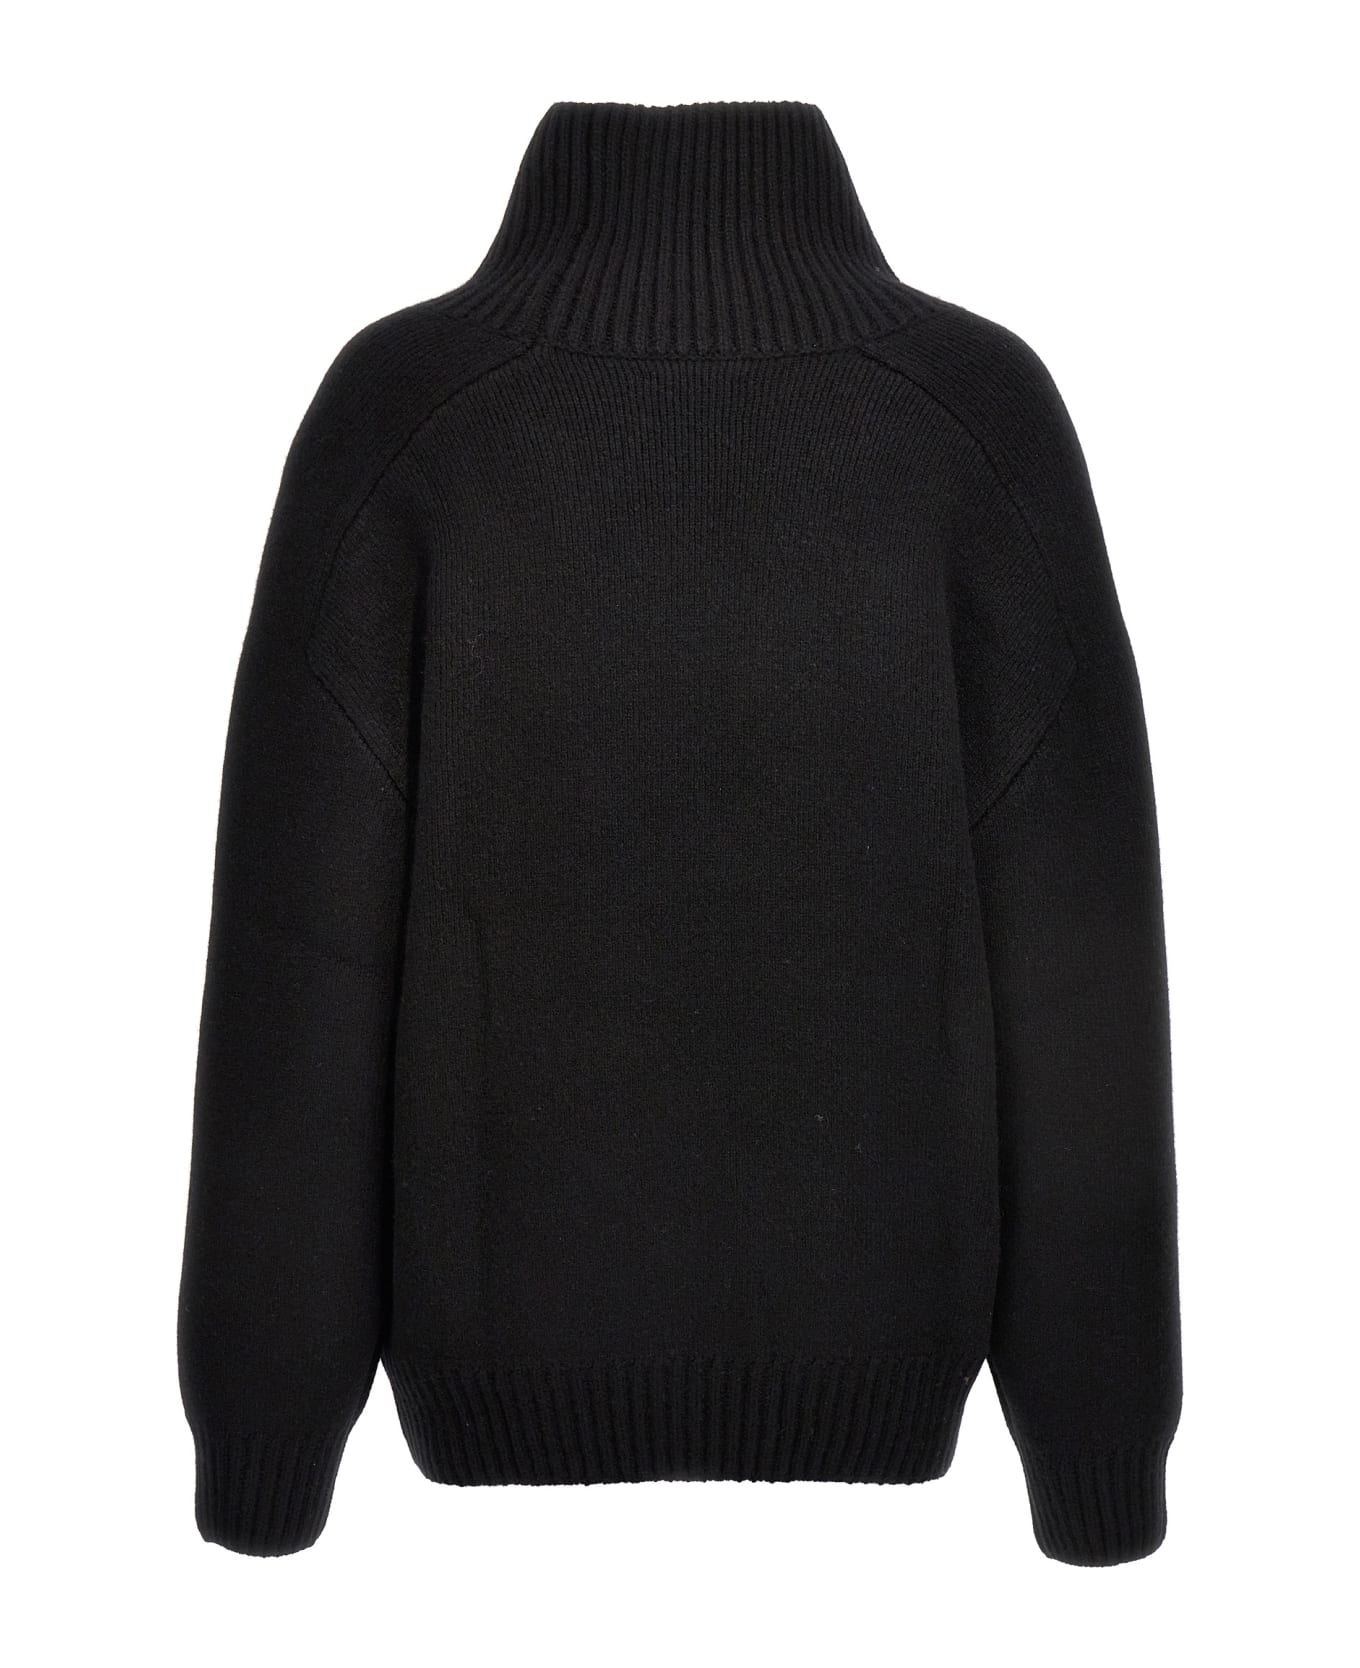 Khaite 'landen' Sweater - Black ニットウェア